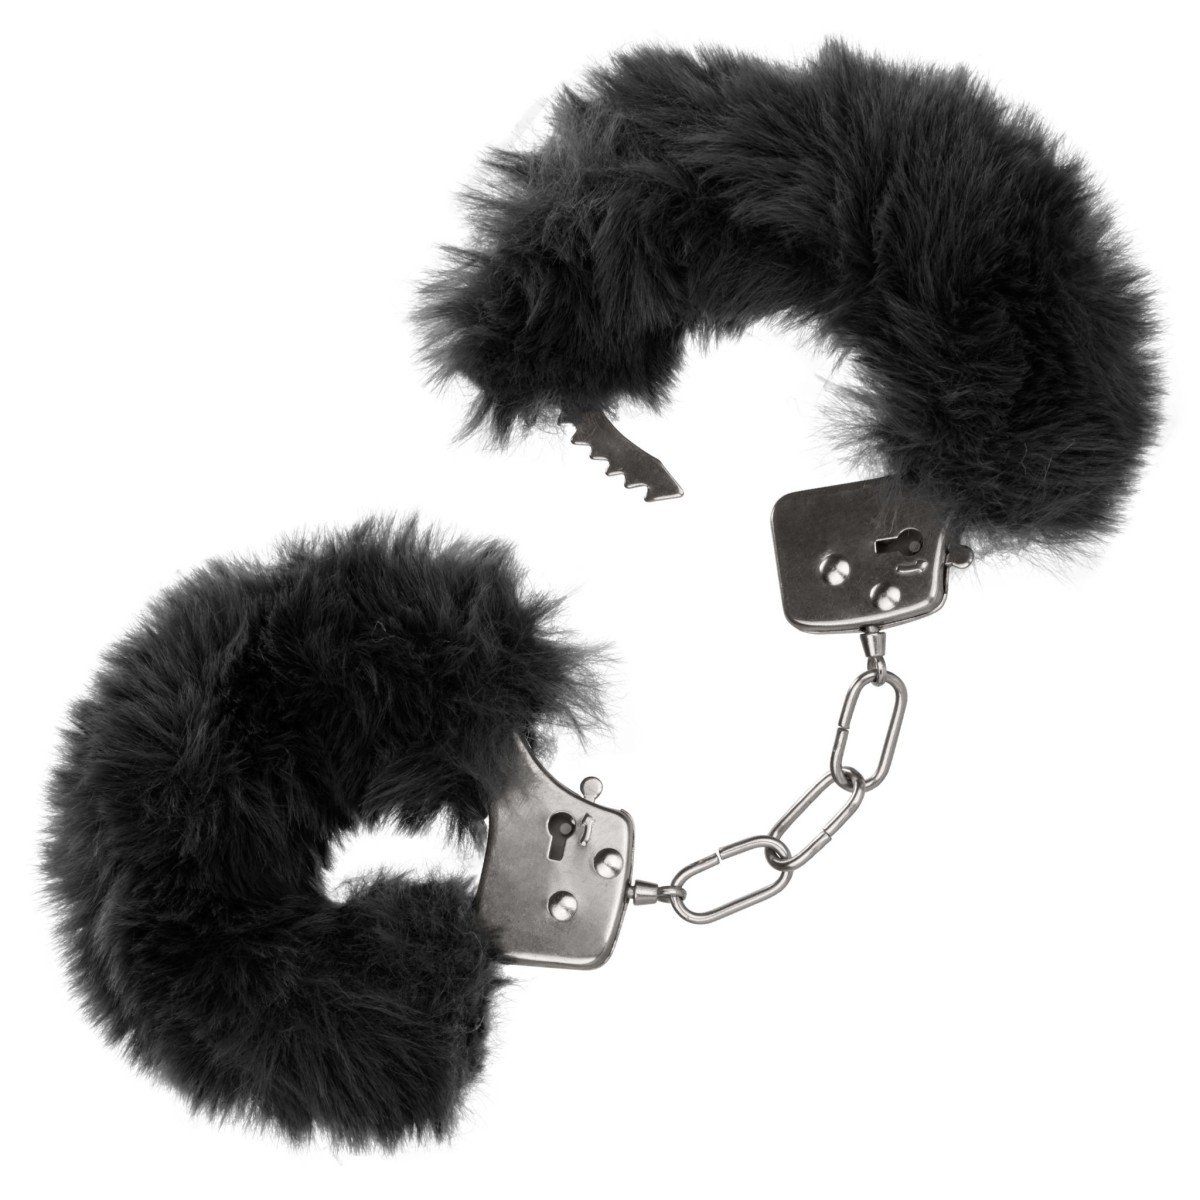 Plyšová pouta CalExotics Ultra Fluffy Furry Cuffs černá, kovová pouta s plyšem